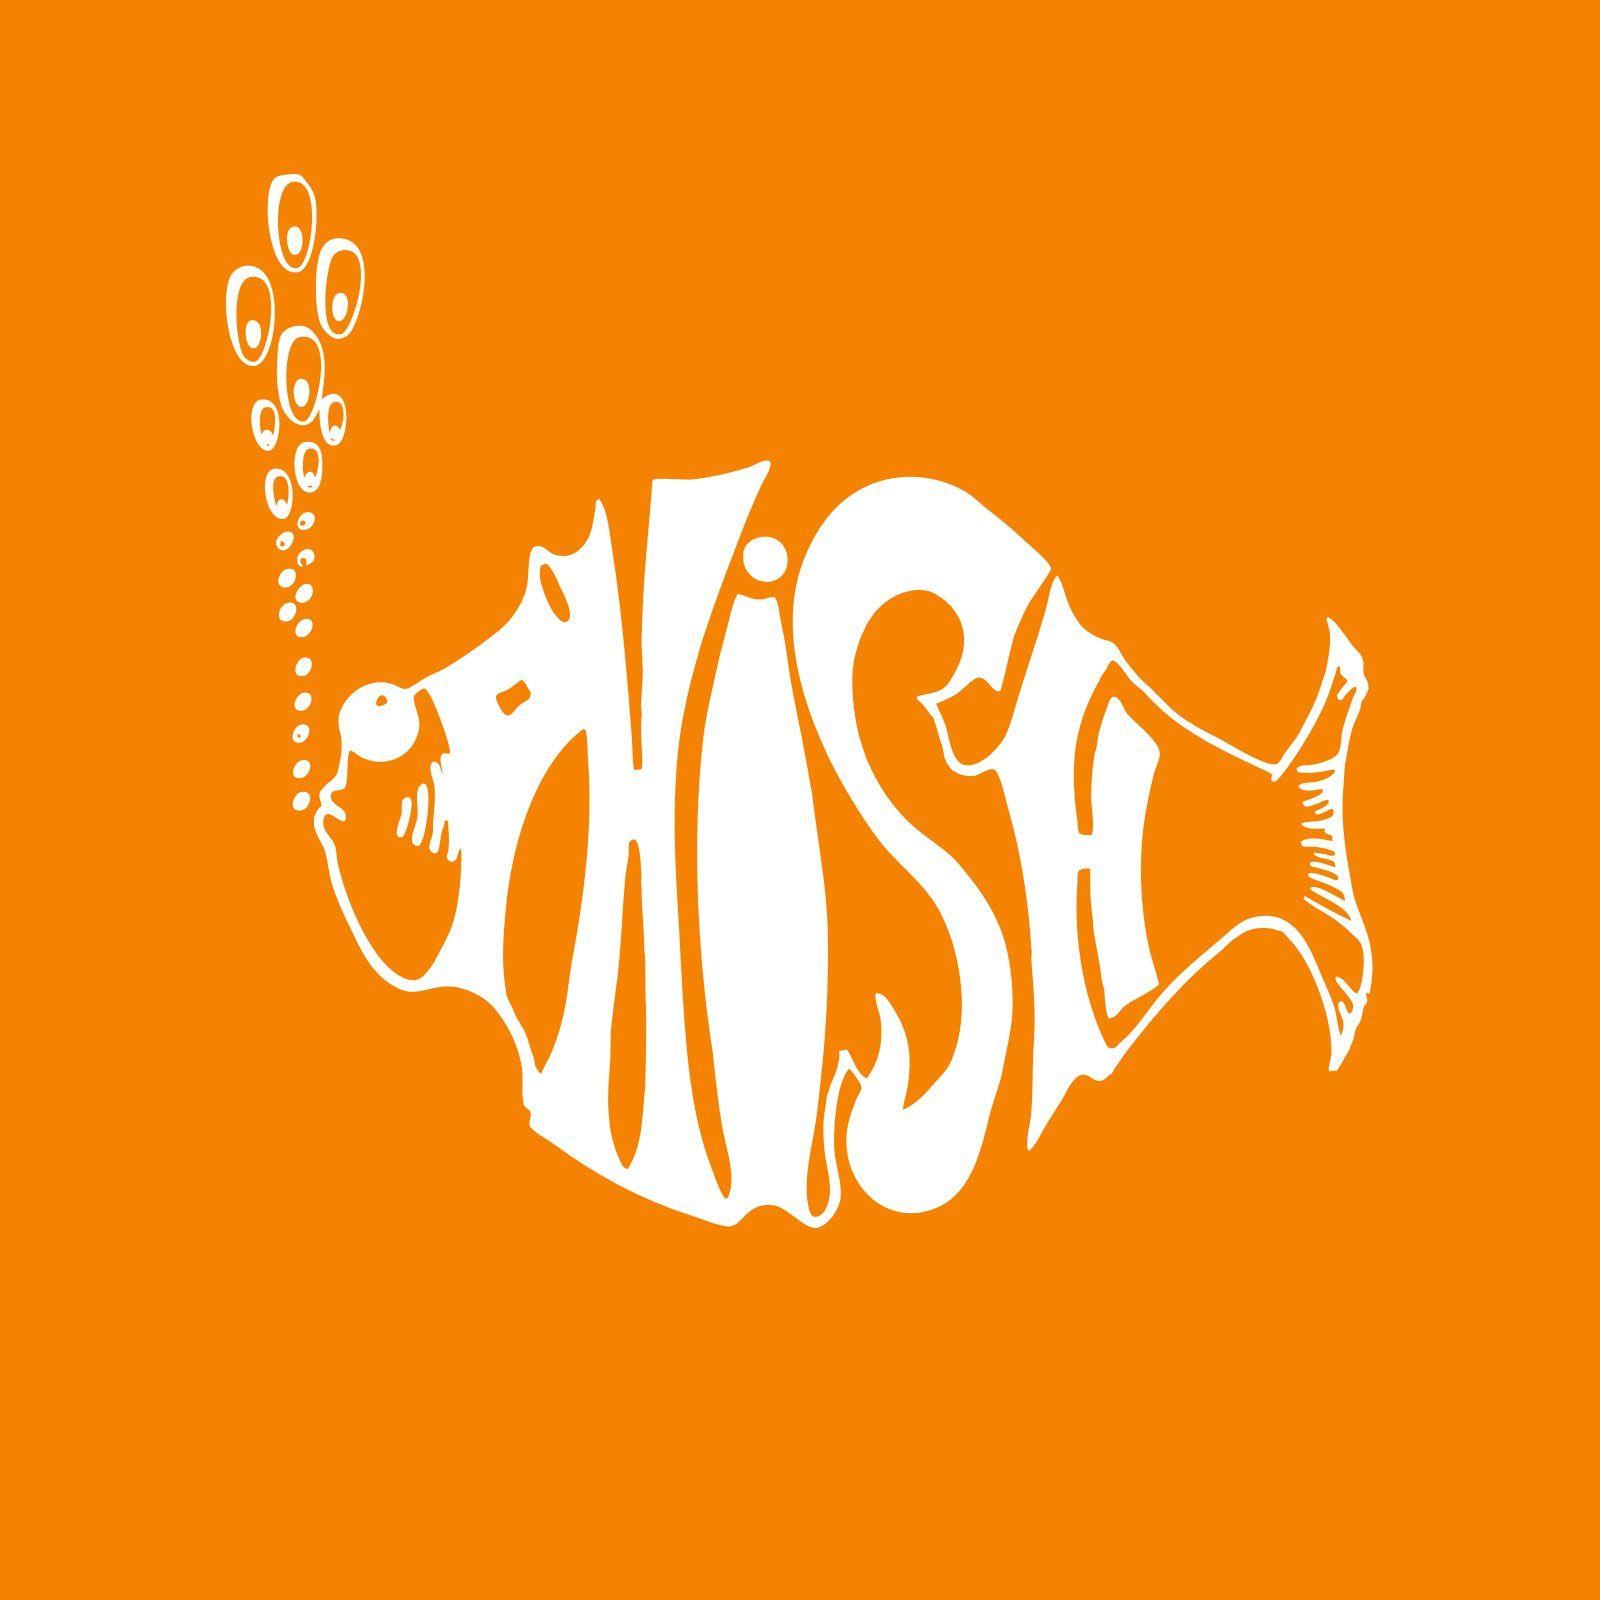 Phish Logo - Phish